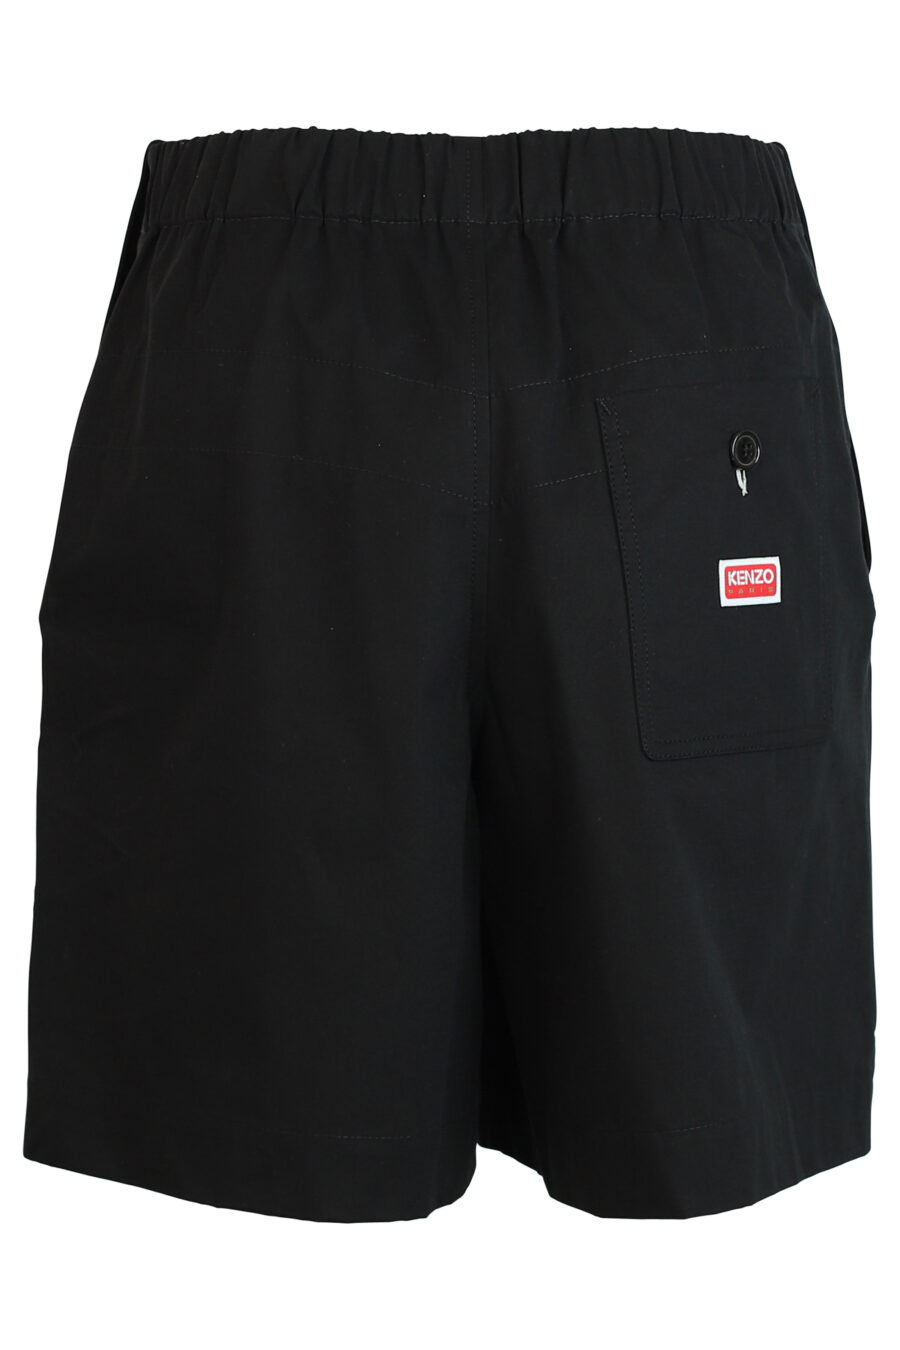 Pantalón negro corto con logo - 3612230419773 2